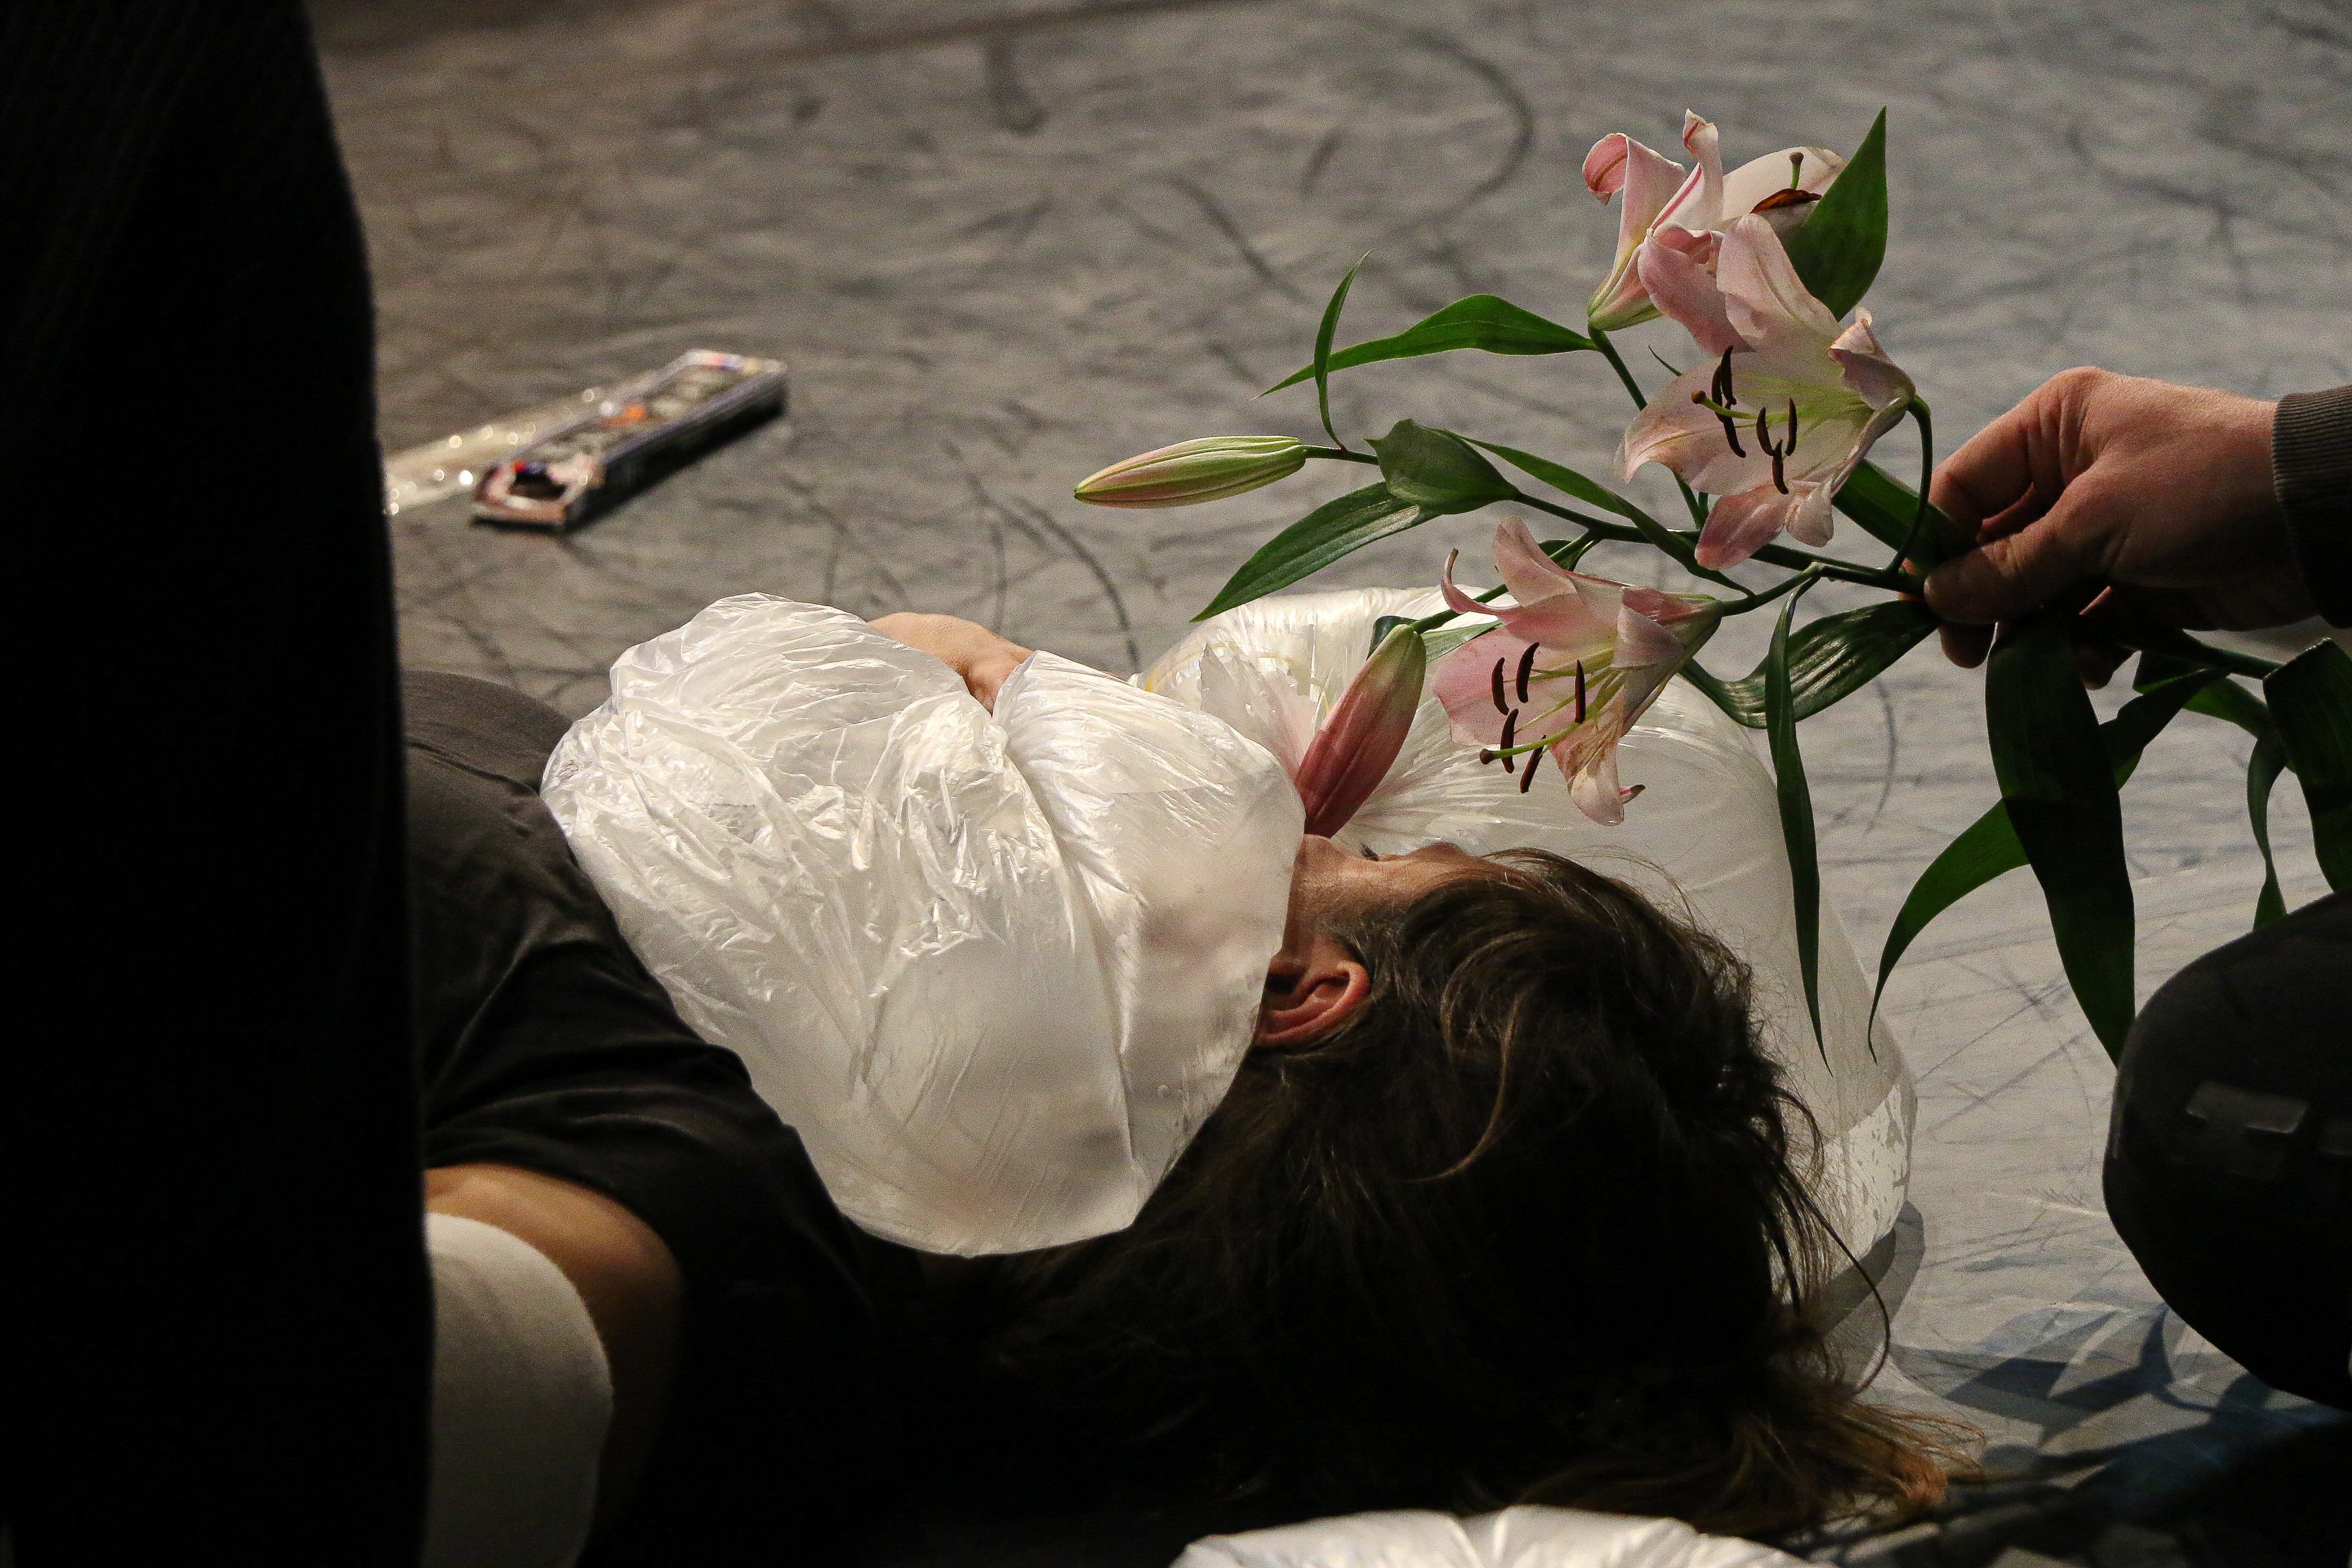 Eine Person liegt auf einem dunklen Boden. Auf ihrem Oberkörper liegen mit Luft gefüllte, durchsichtige Plastiksäcke. Eine andere Person hält ihr Blumen über das Gesicht.